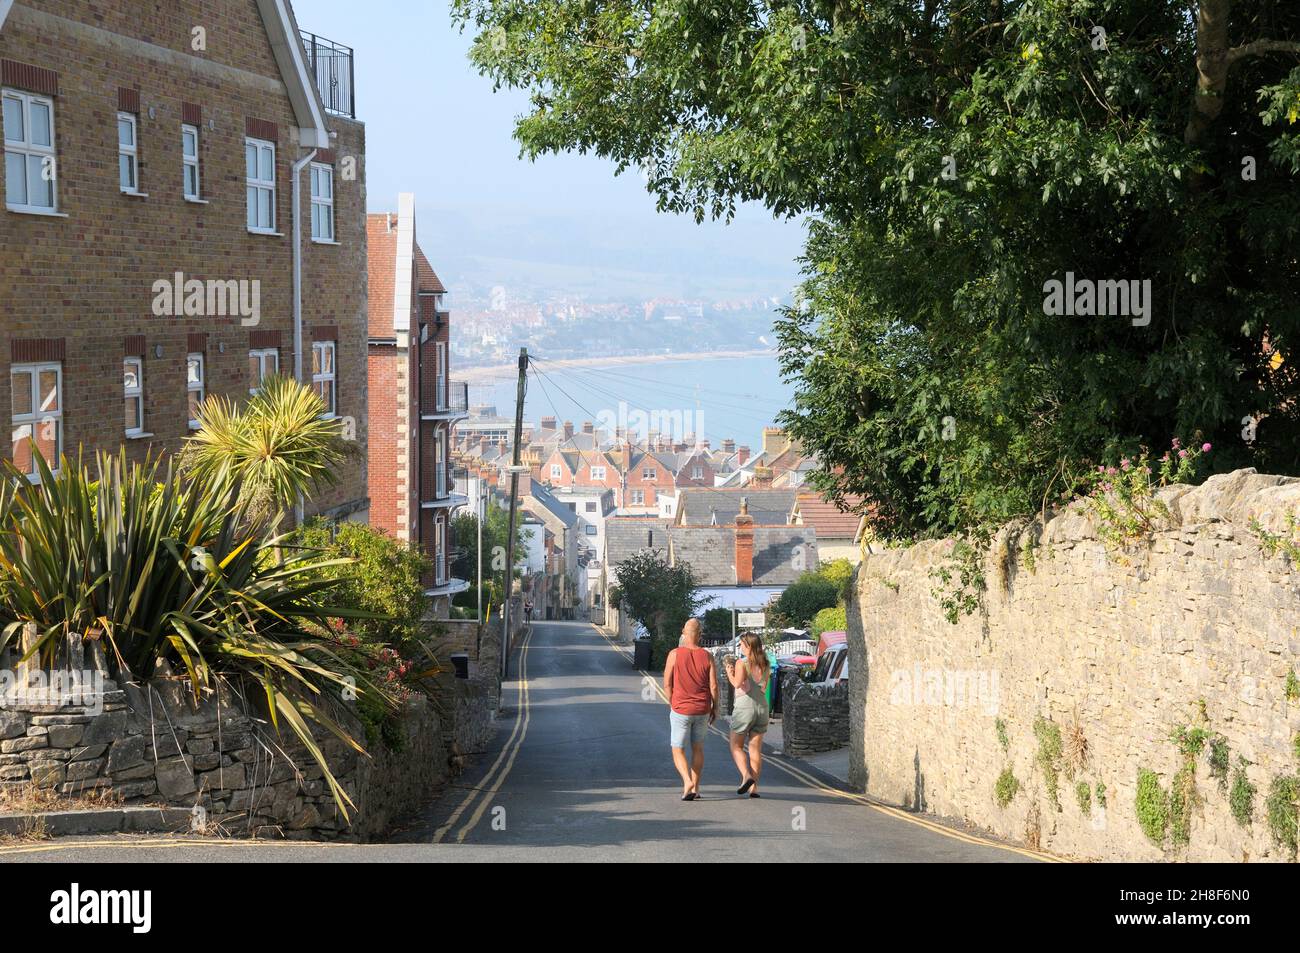 Swanage, Dorset, Royaume-Uni.Un couple descend une colline escarpée le matin de l'été vers le centre-ville avec vue sur les toits de Swanage Bay. Banque D'Images